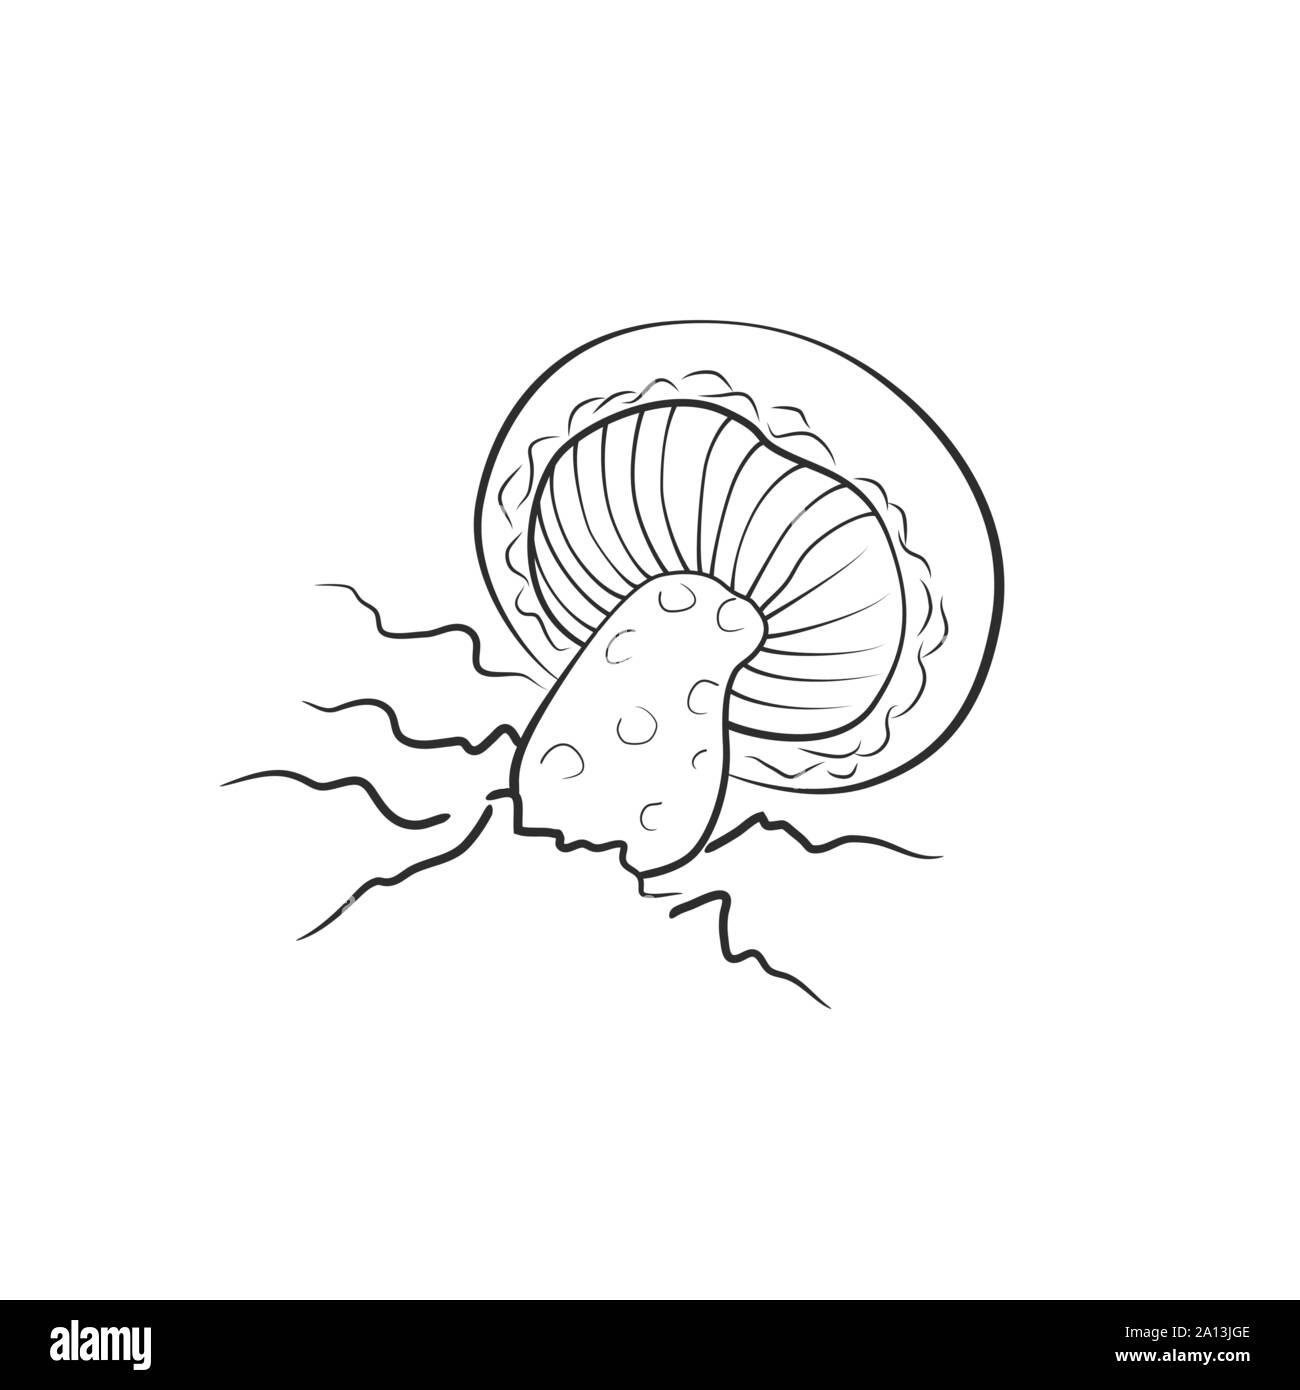 Mushroom illustration, vector. Amanita, death cap mushroom Stock Vector